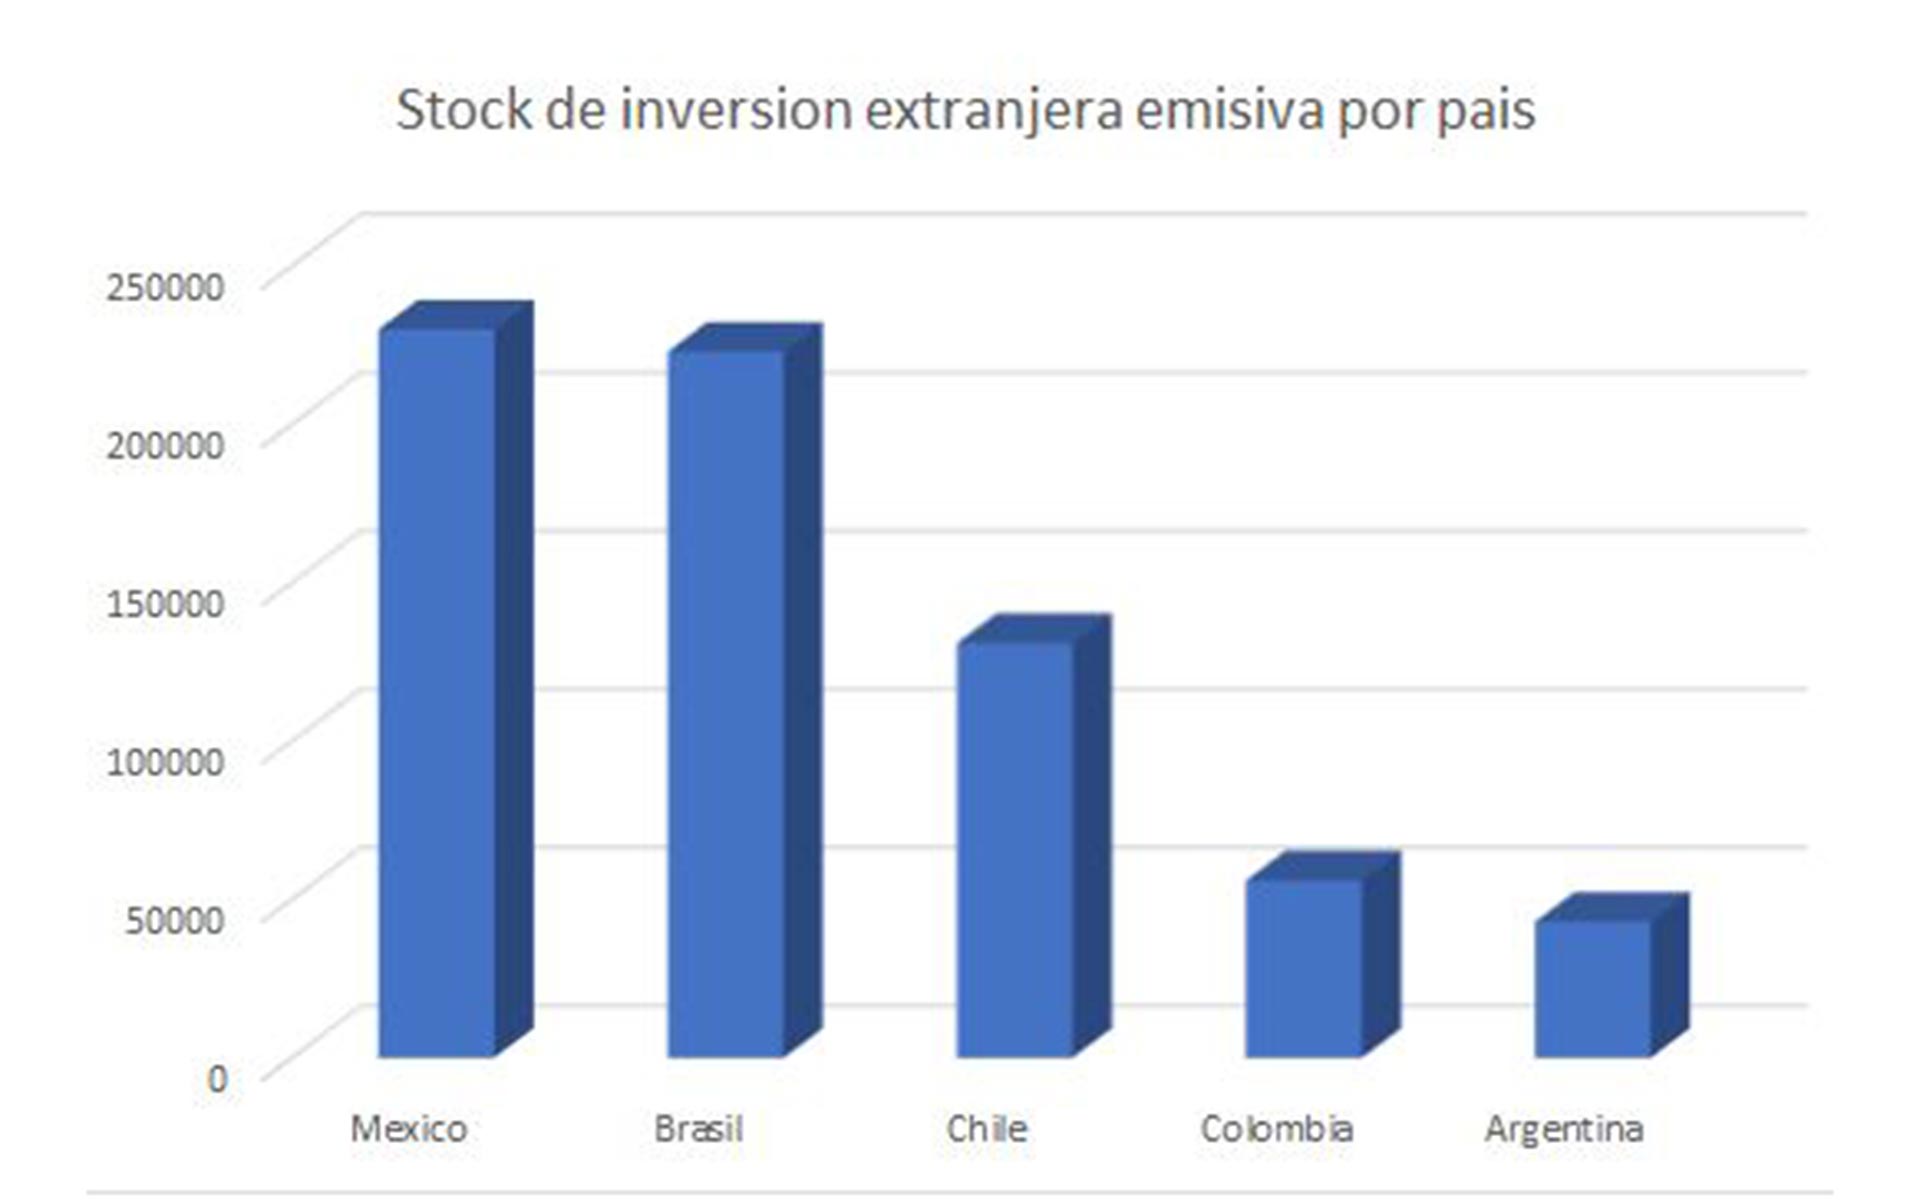 Las empresas argentinas tienen en el exterior una presencia directa menor a las de Colombia y Chile